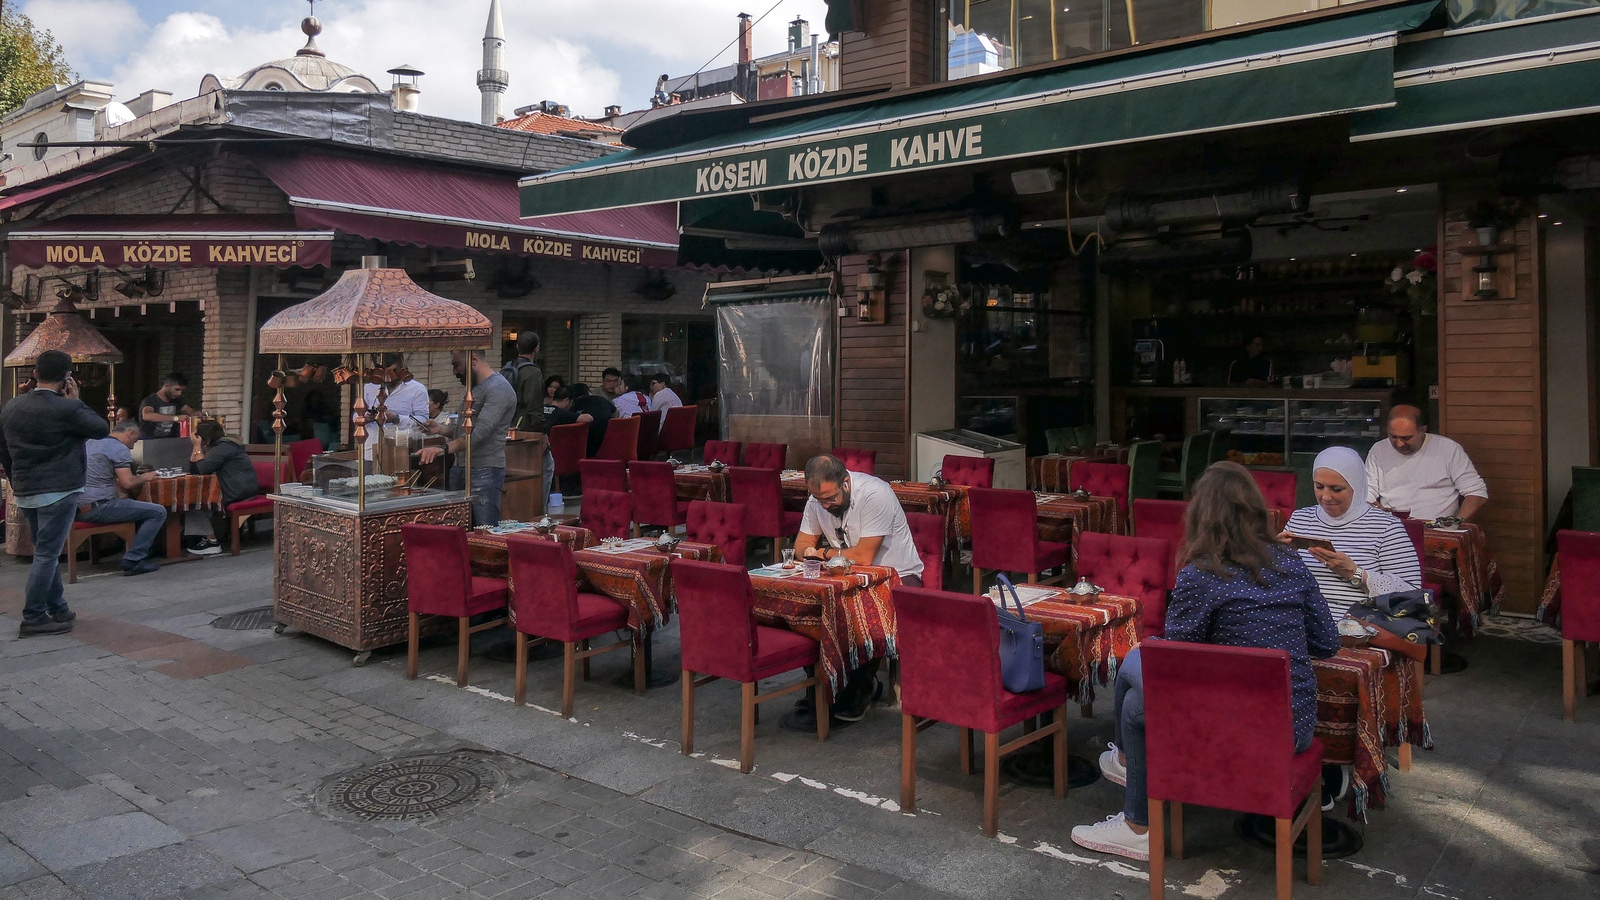 Istanbul - Mola közde Kahveci kávézó a Kadiköy kerületben